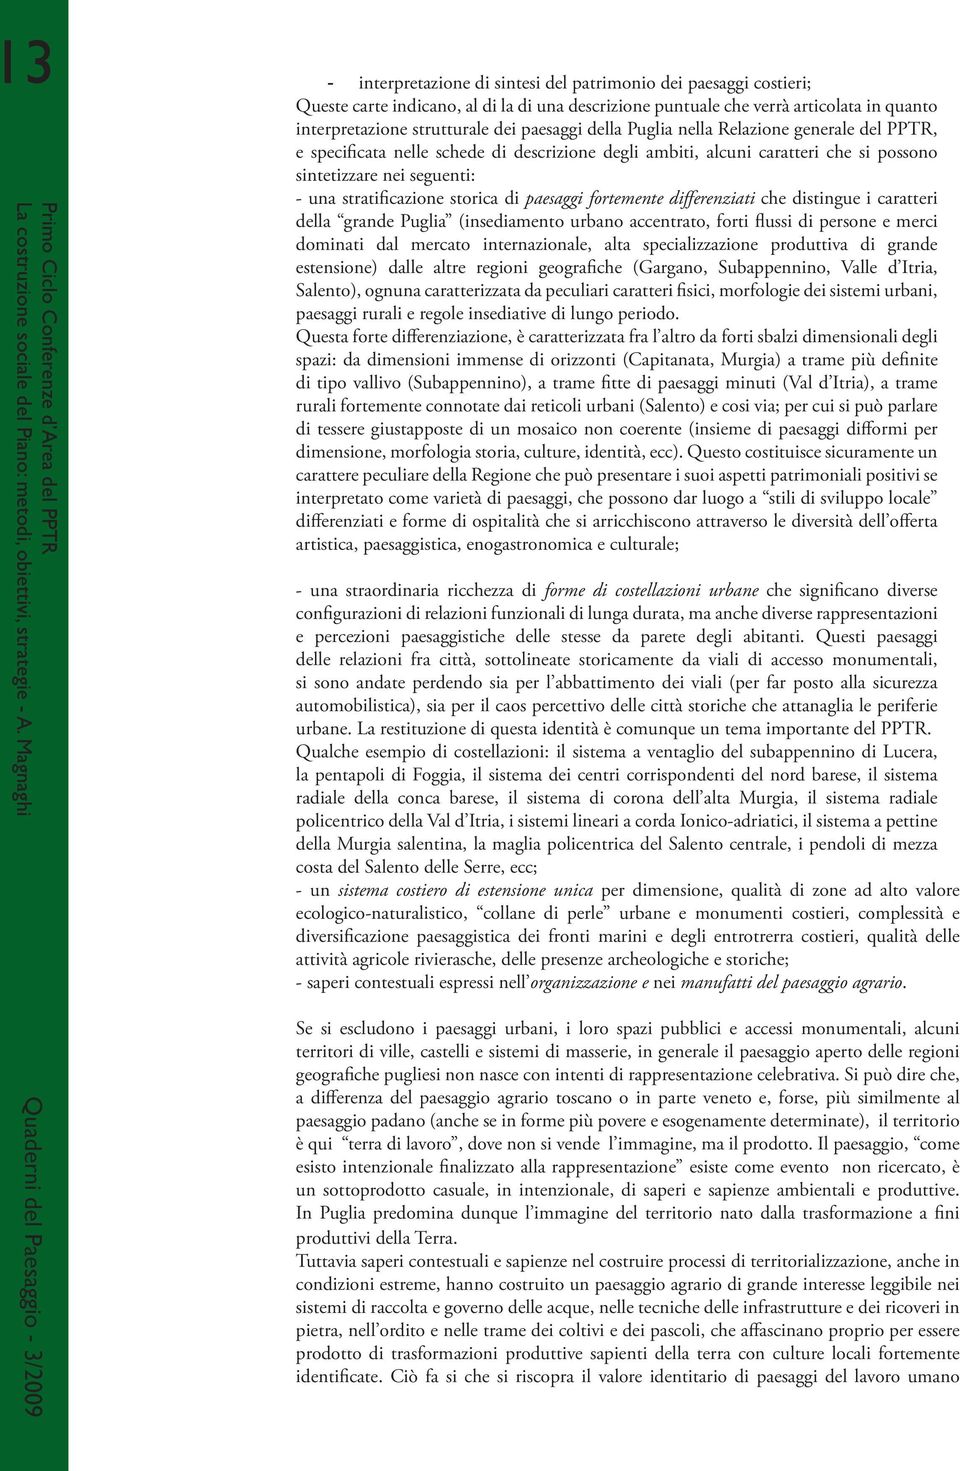 paesaggi della Puglia nella Relazione generale del PPTR, e specificata nelle schede di descrizione degli ambiti, alcuni caratteri che si possono sintetizzare nei seguenti: - una stratificazione